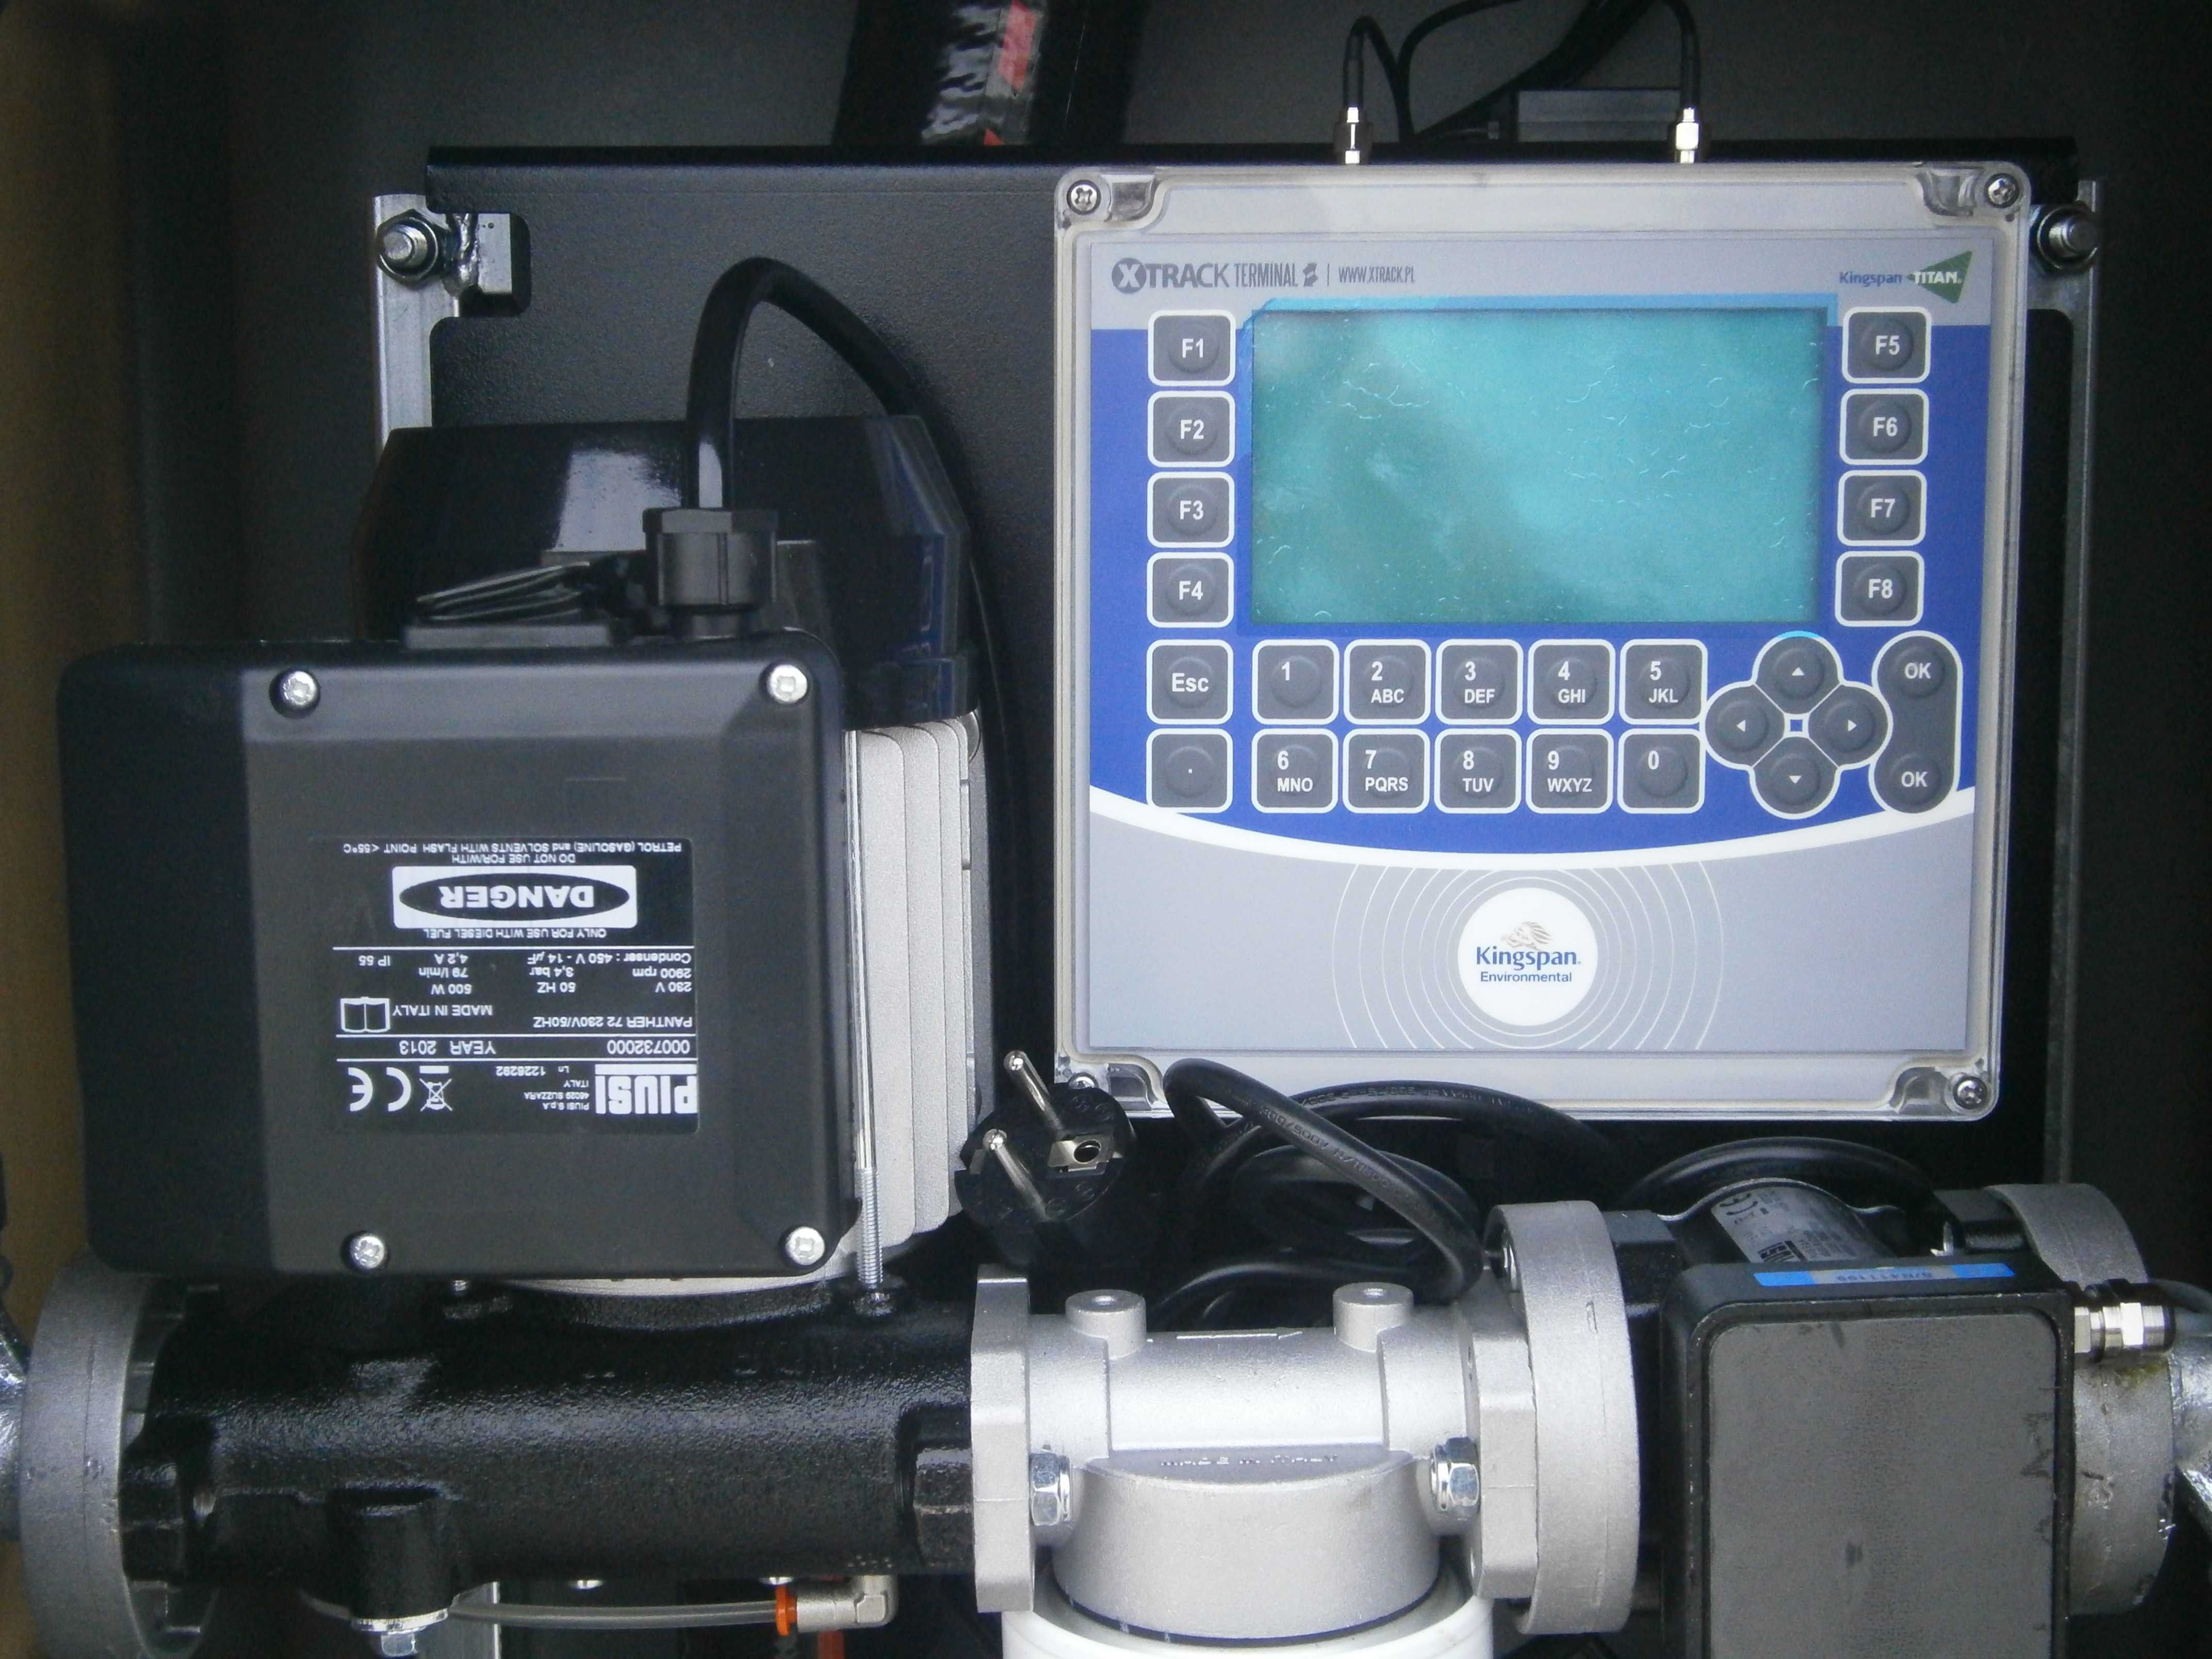 Terminal XTRACK kontrola paliwa na czipy karty system wydania diesla